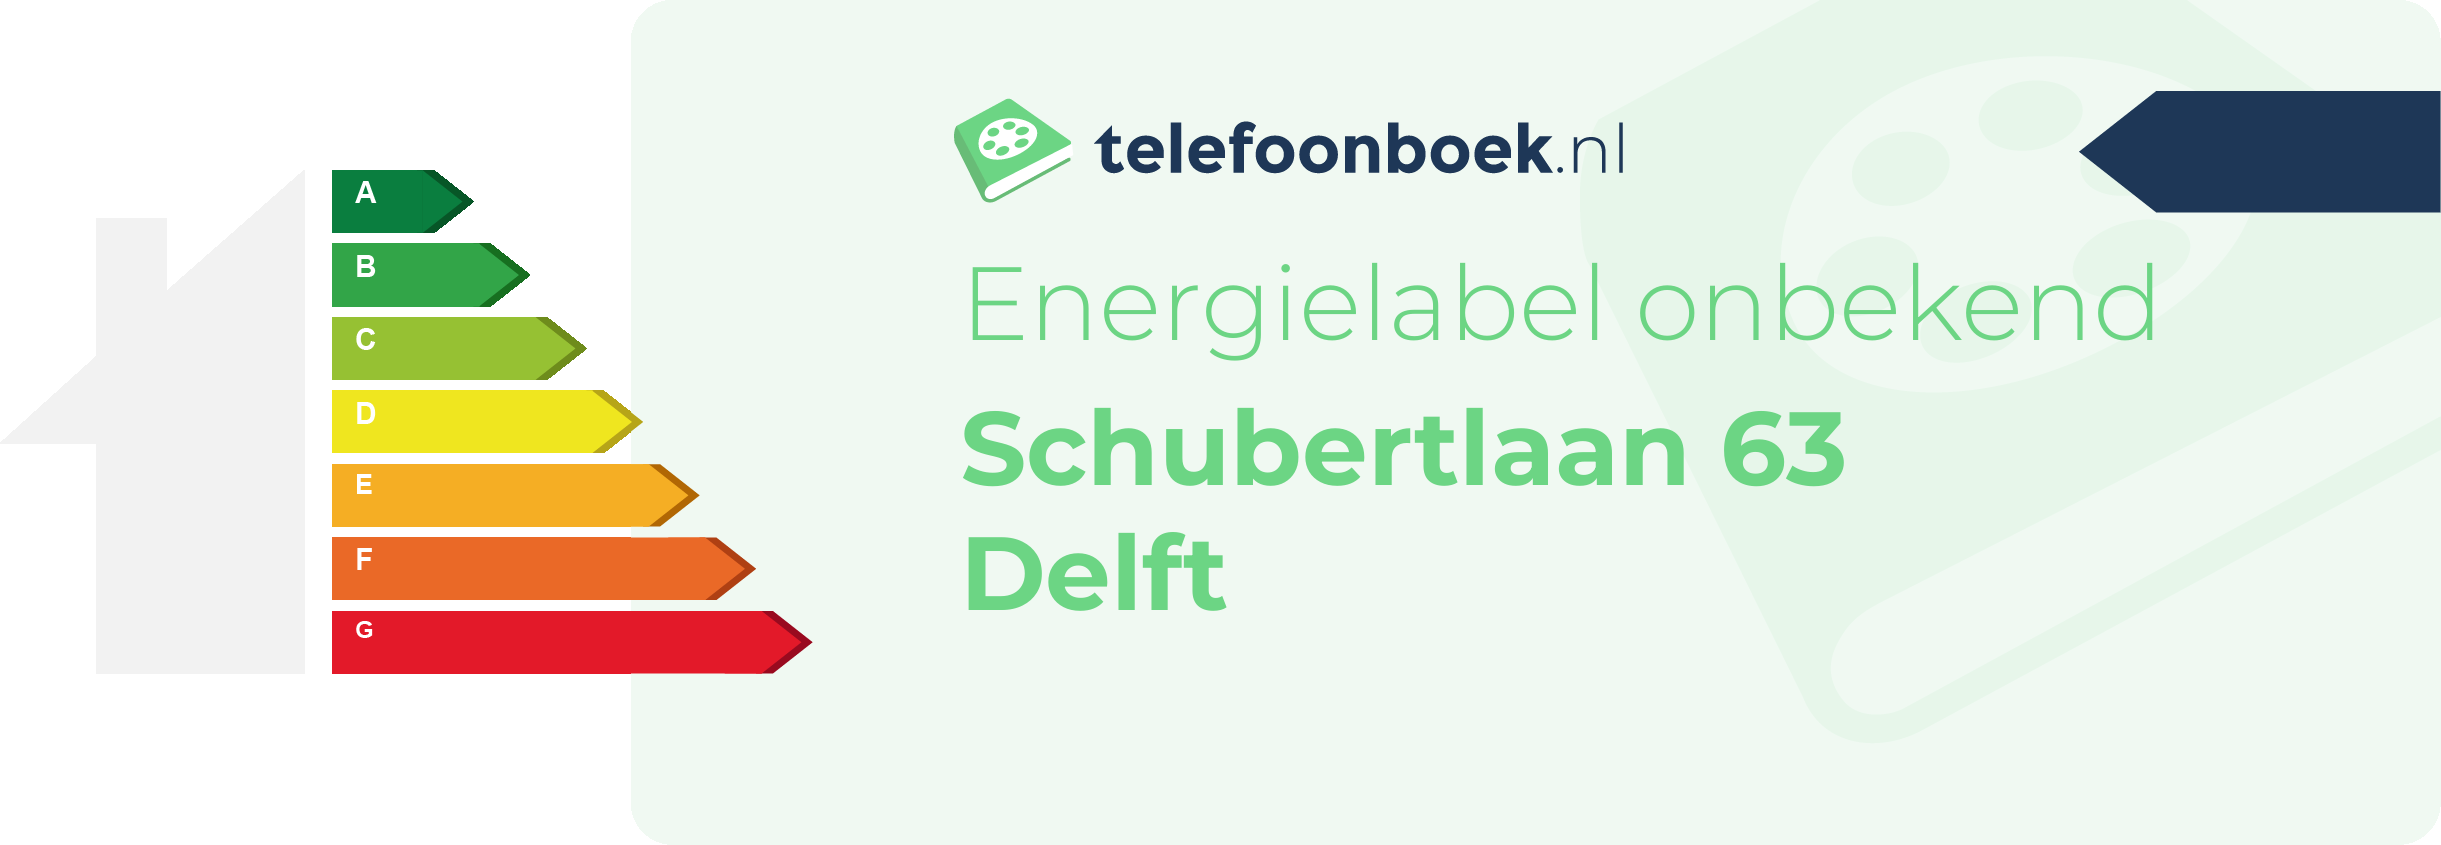 Energielabel Schubertlaan 63 Delft